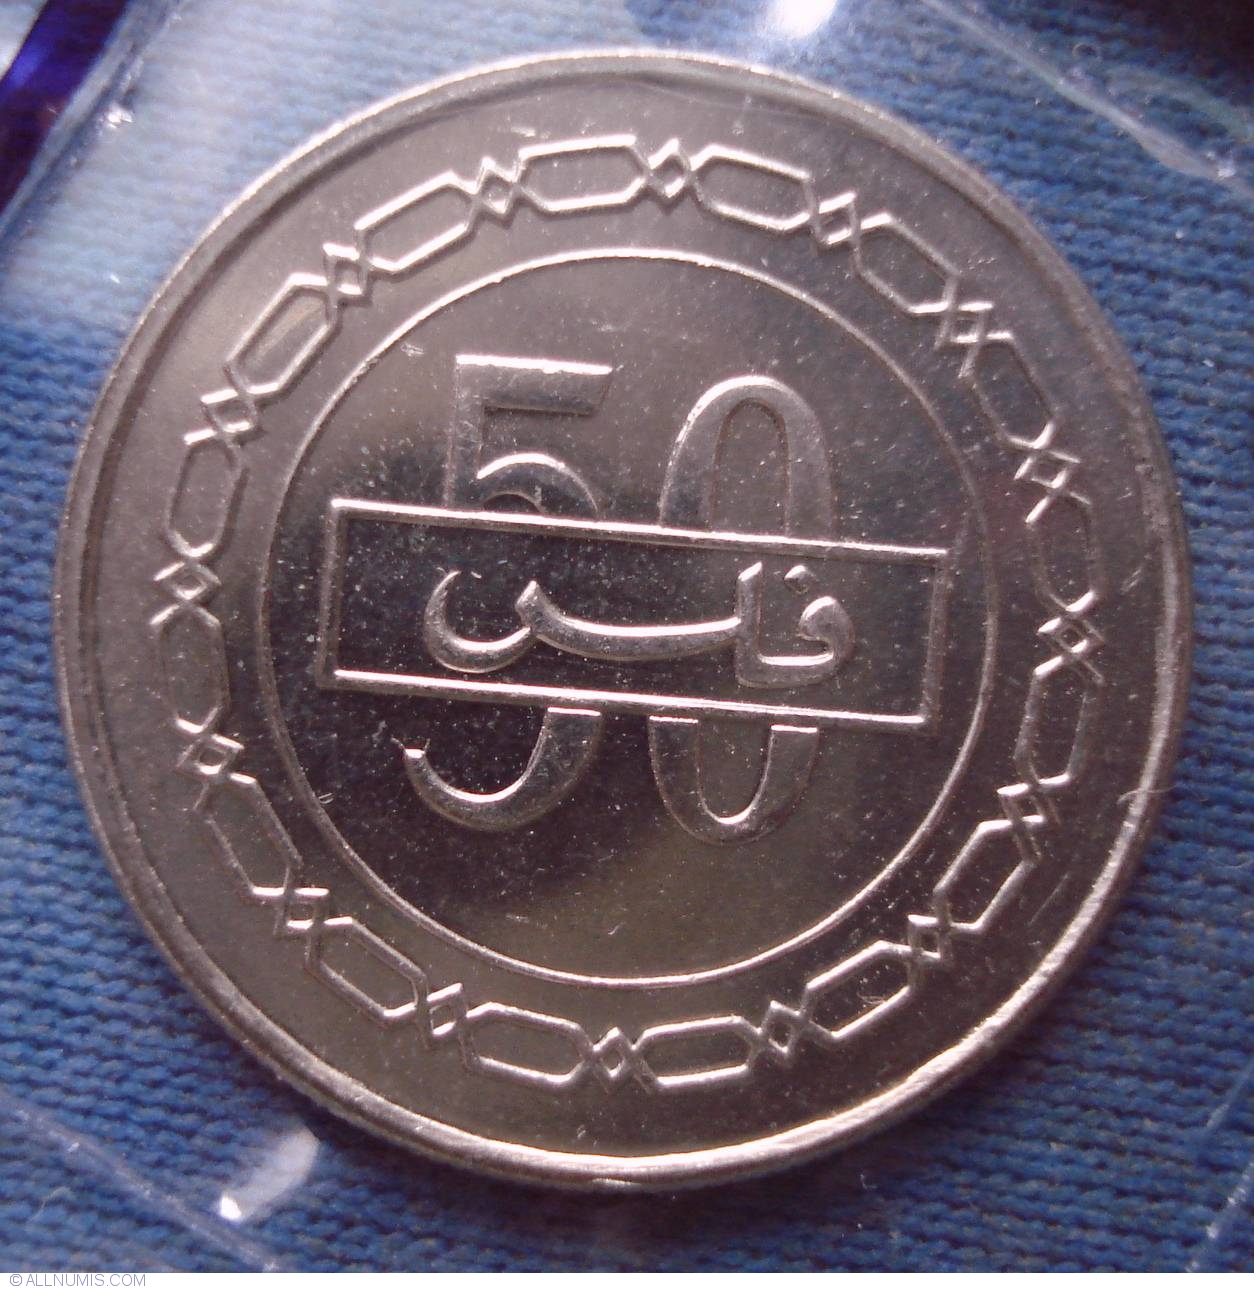 5-100 fils 2007-2008 UNC Bahrain set of 5 coins